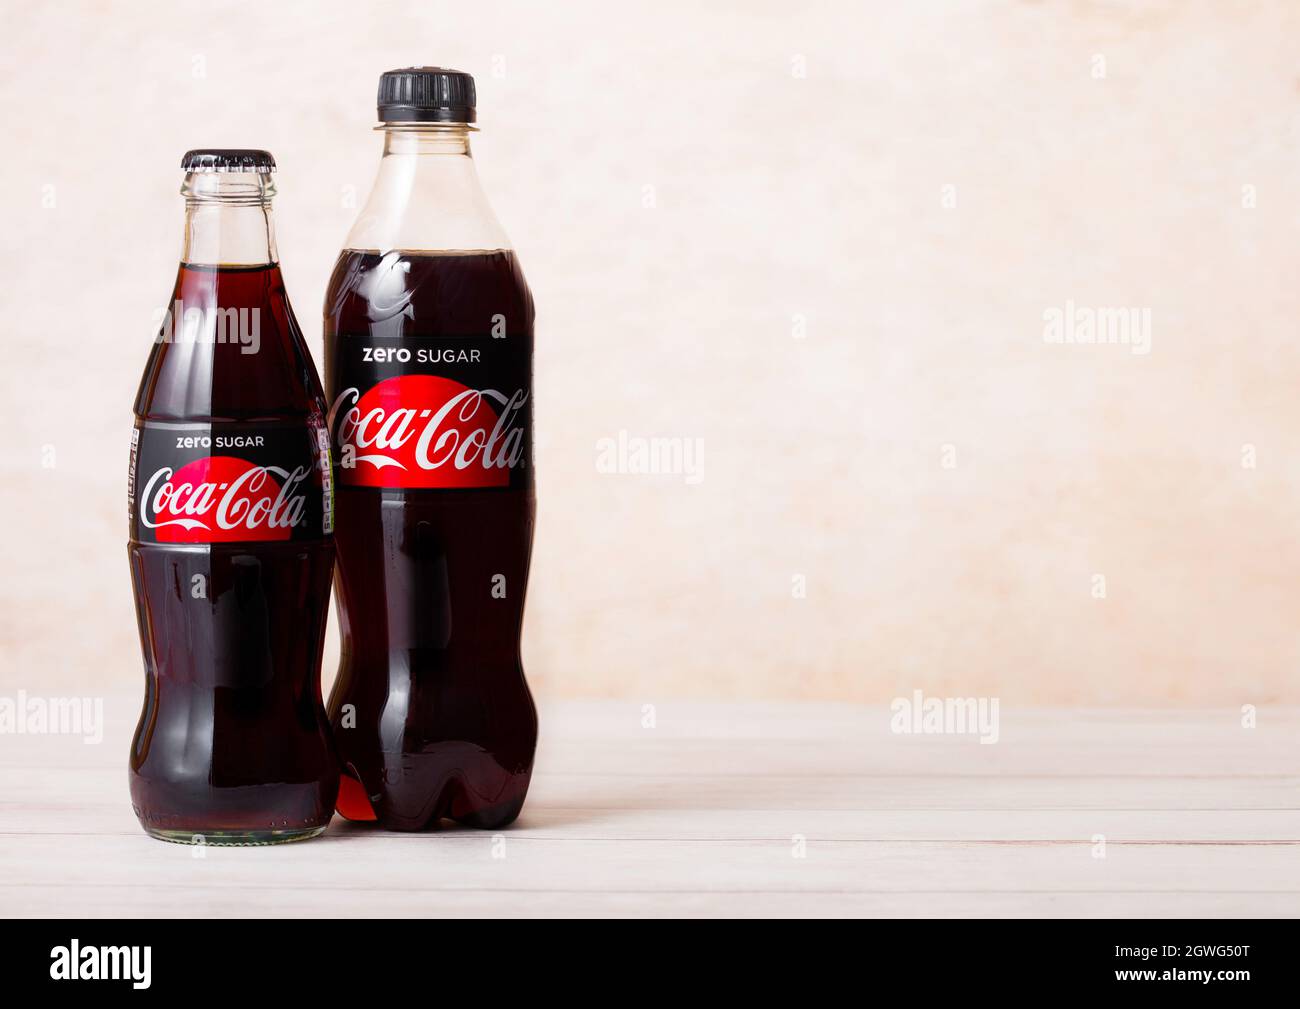 LONDON, Großbritannien - 03. AUGUST 2018: Glas- und Plastikflasche Zero Sugar Coca Cola Softdrink auf Holz. Das beliebteste Getränk der Welt. Stockfoto